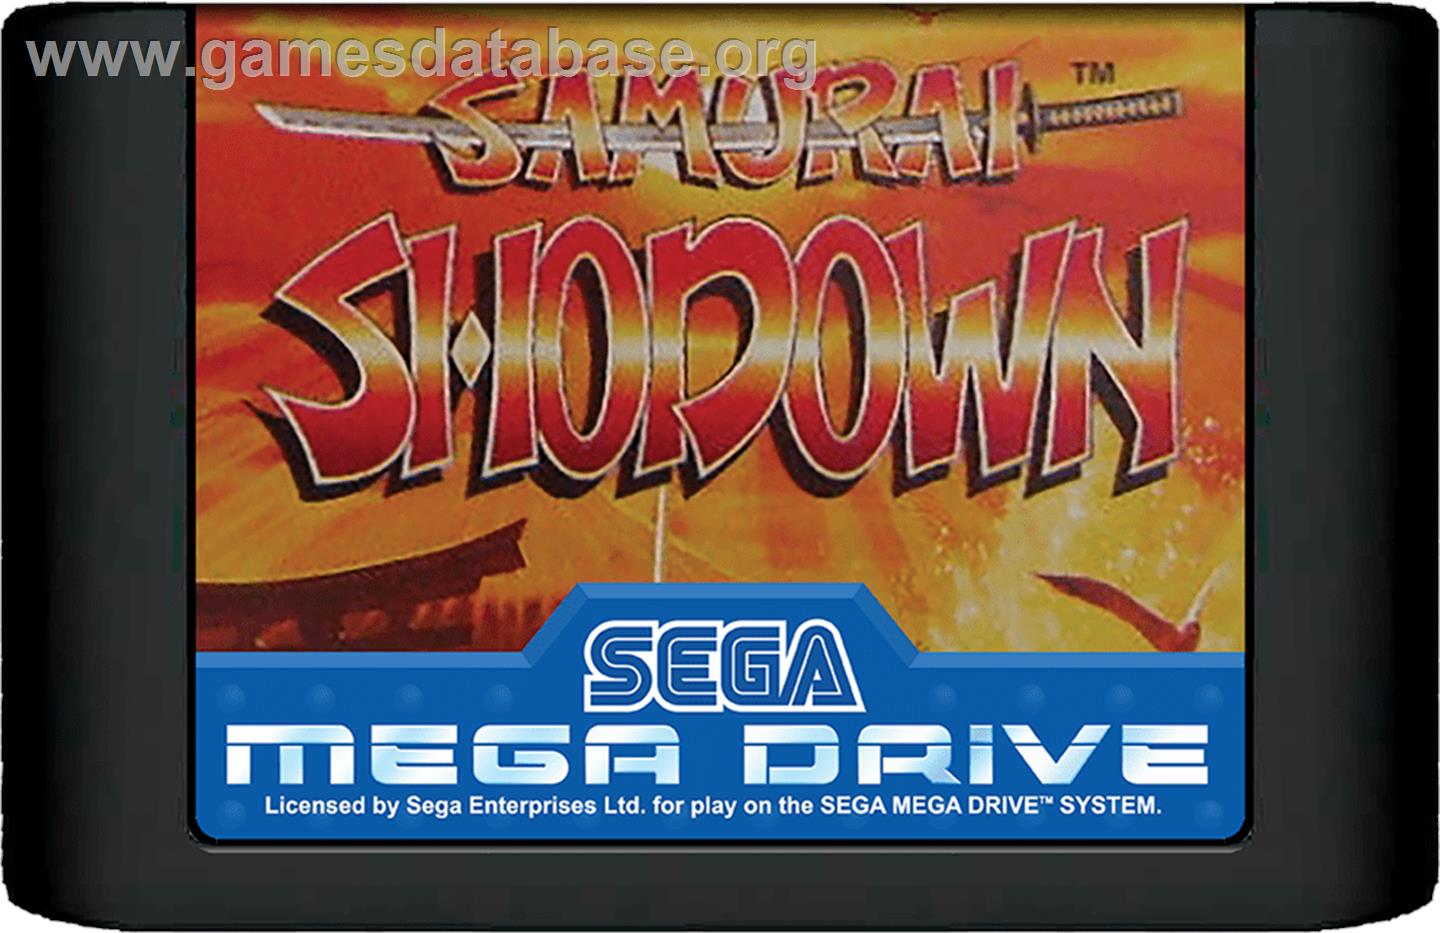 Samurai Shodown / Samurai Spirits - Sega Genesis - Artwork - Cartridge